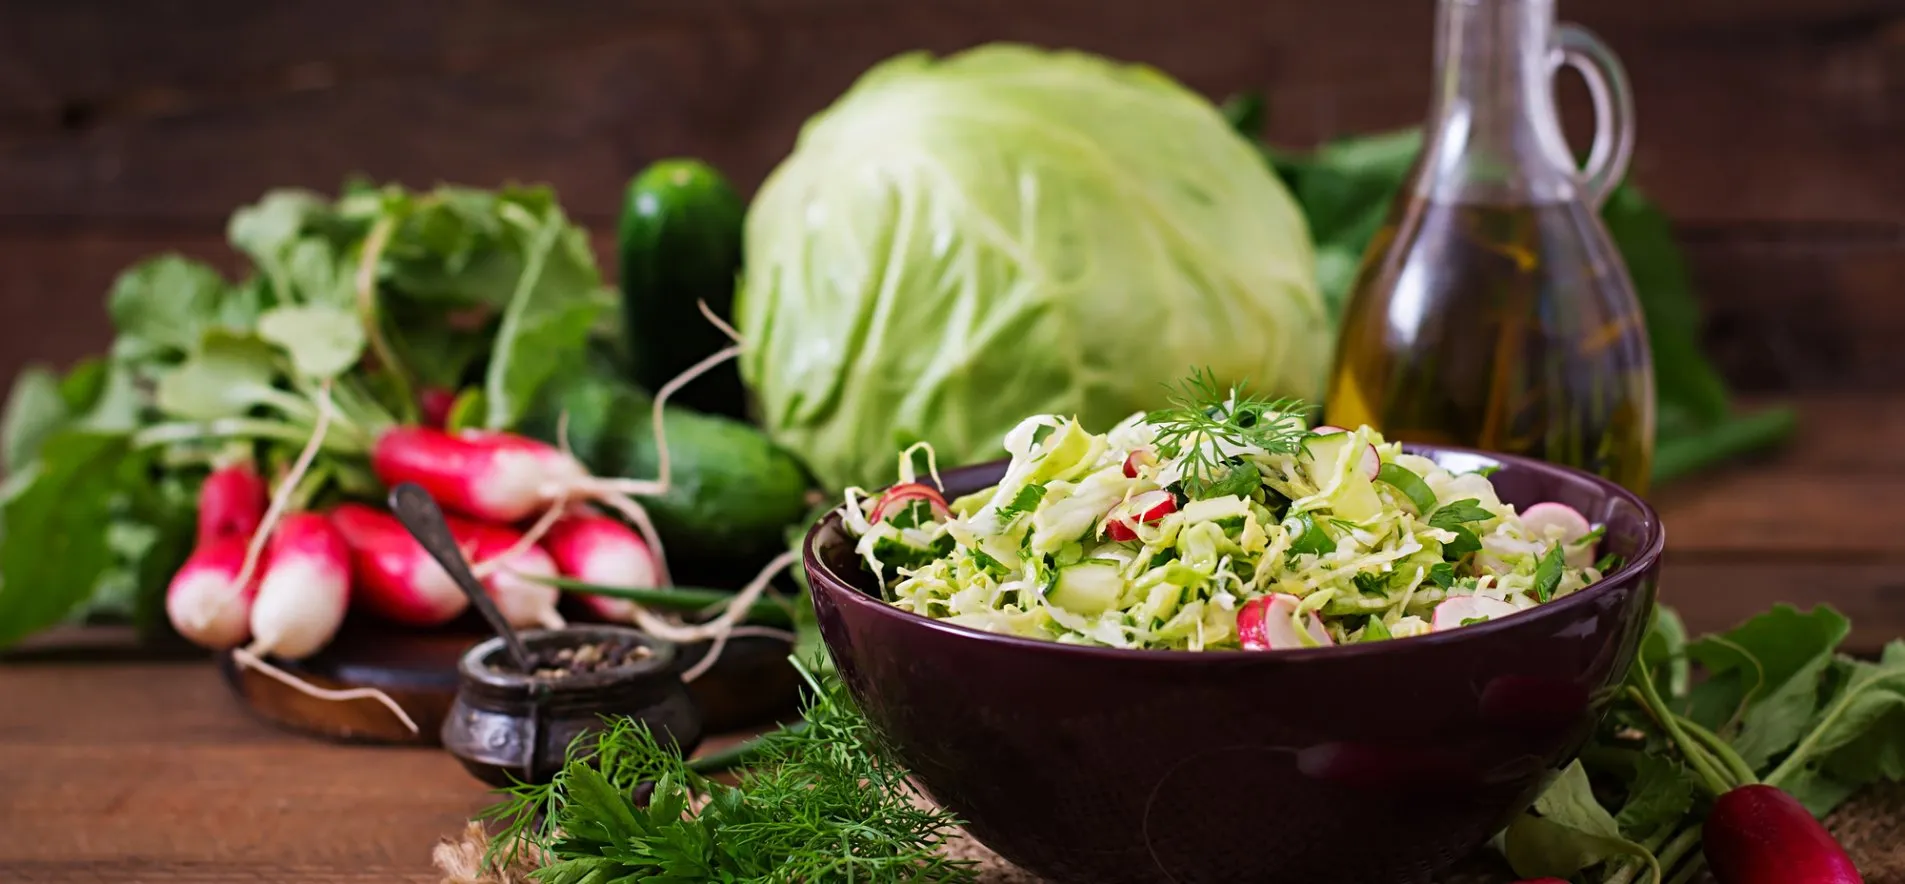 Ароматный и очень сочный: готовим салат "Весенний" из молодой капусты и редиса